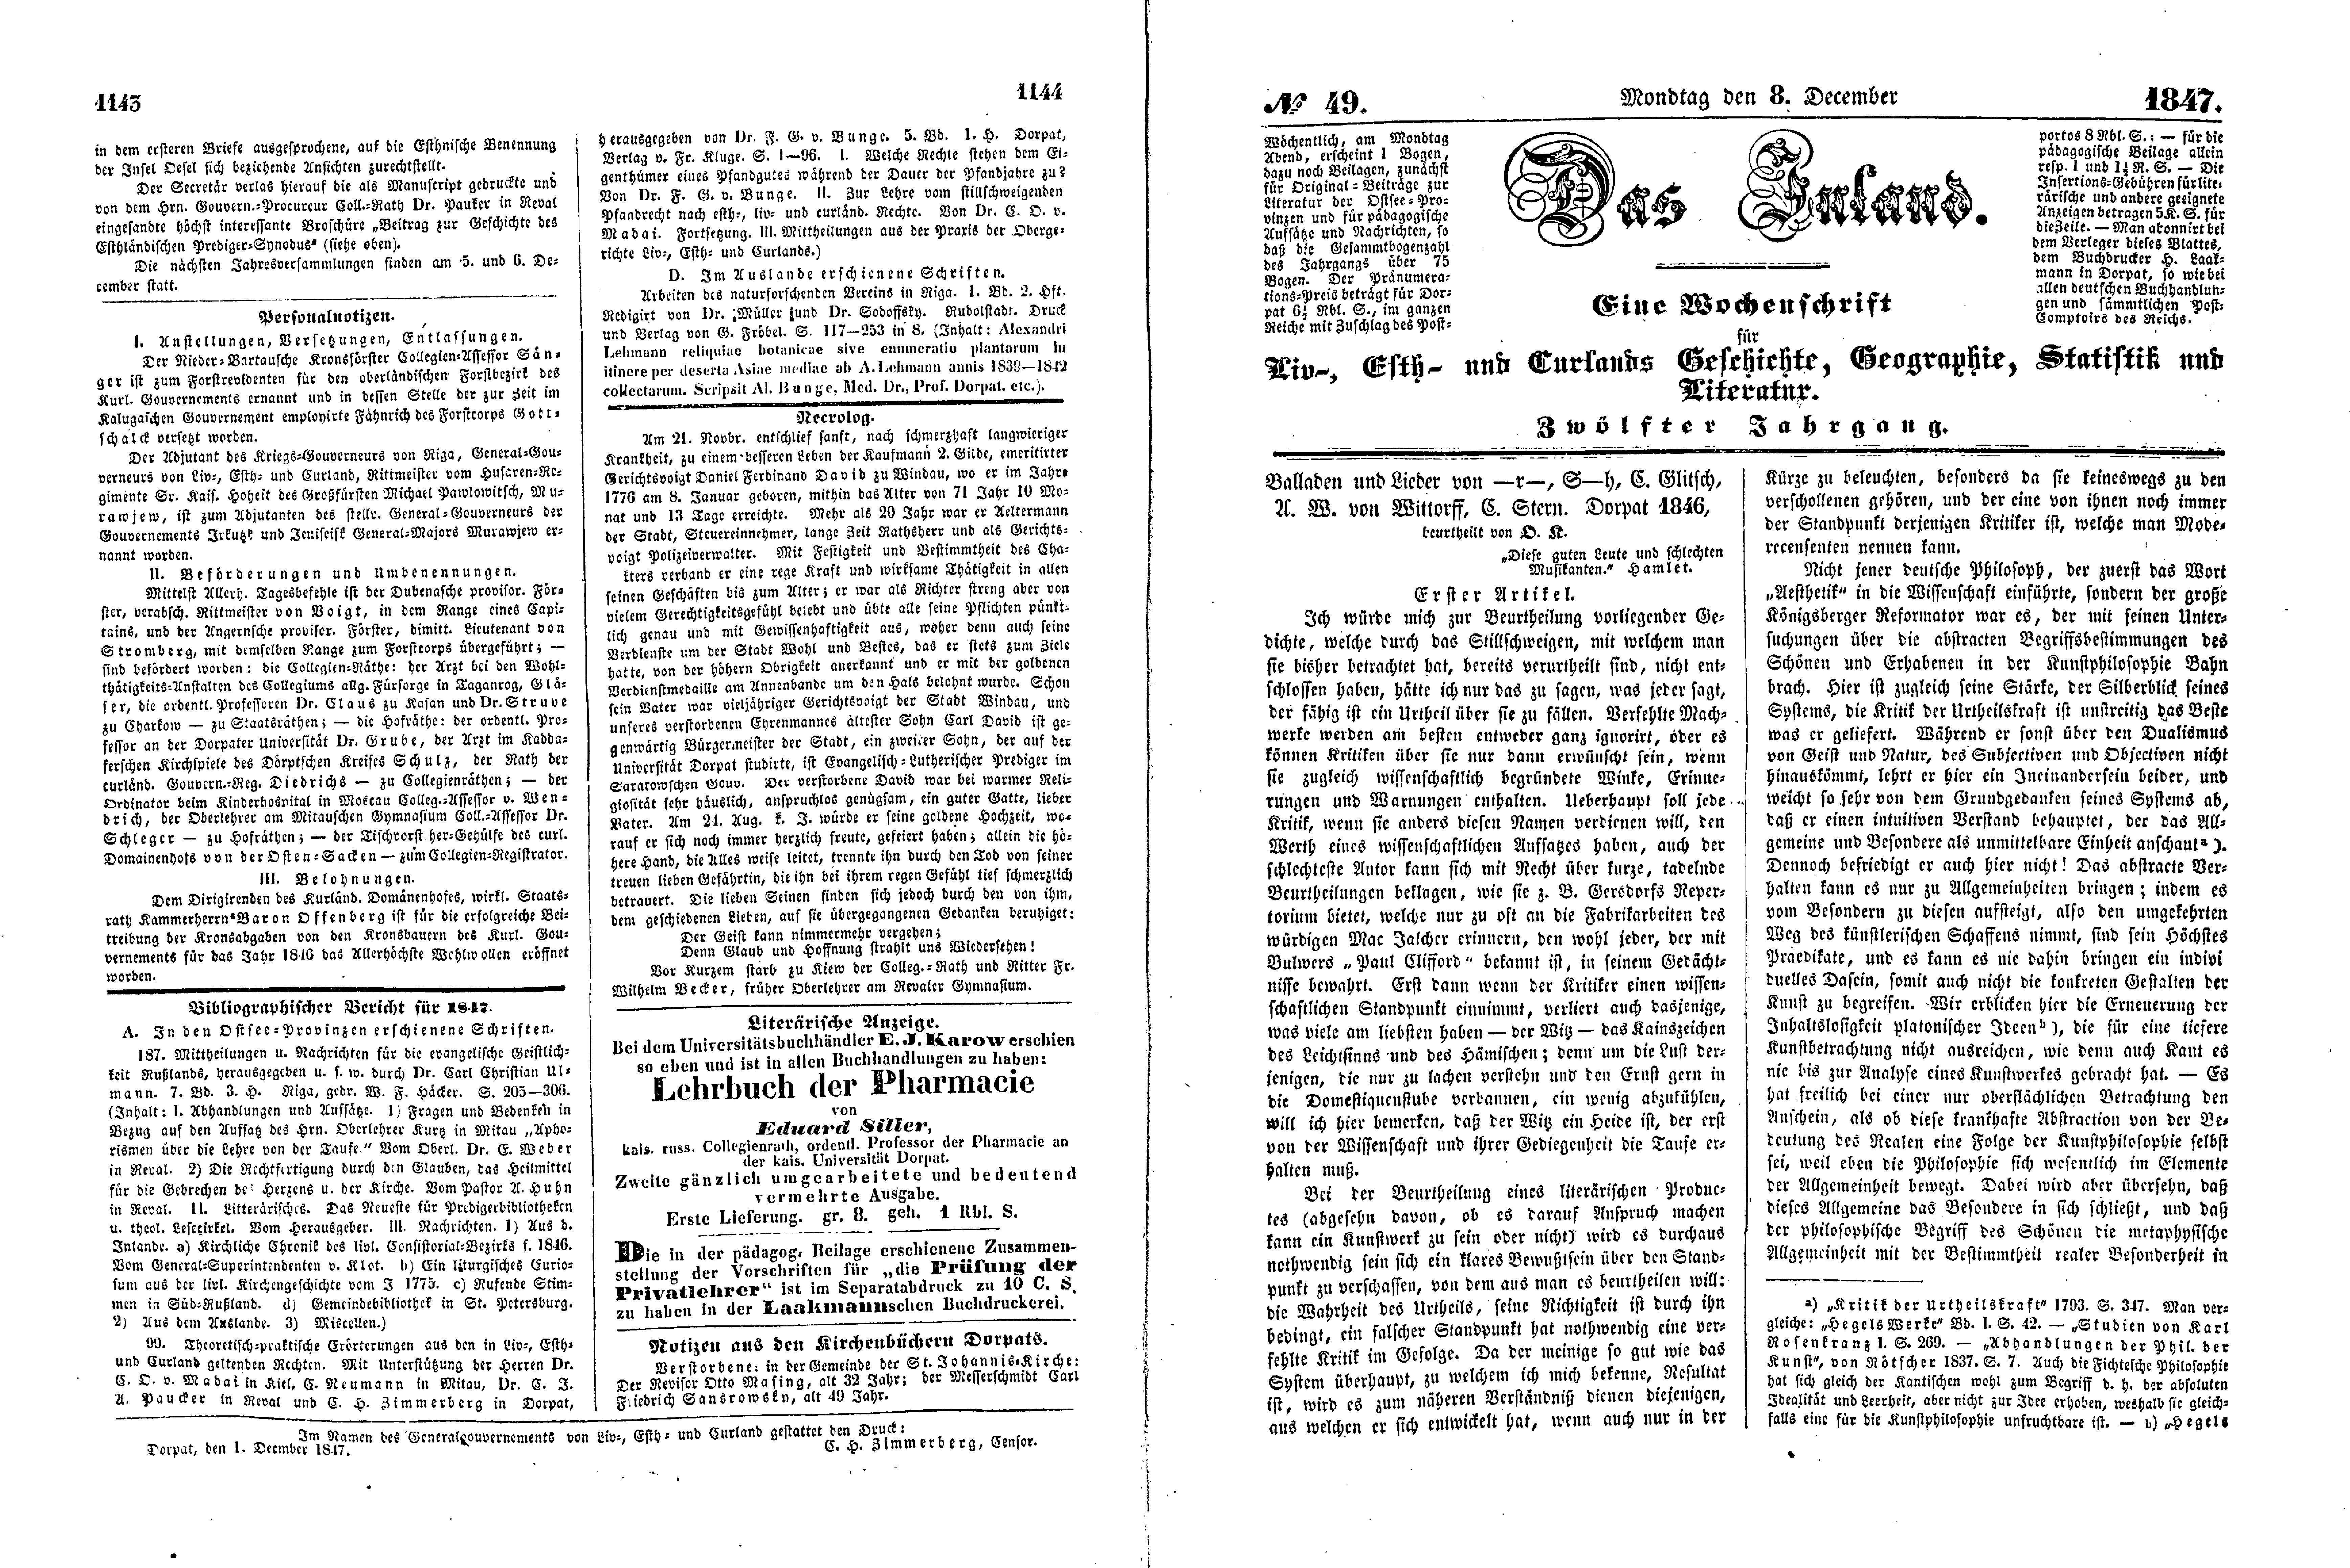 Balladen und Lieder von -r-, S-h, C. Glitsch, A. W. von Wittorff, C. Stern (1847) | 1. (1143-1146) Põhitekst